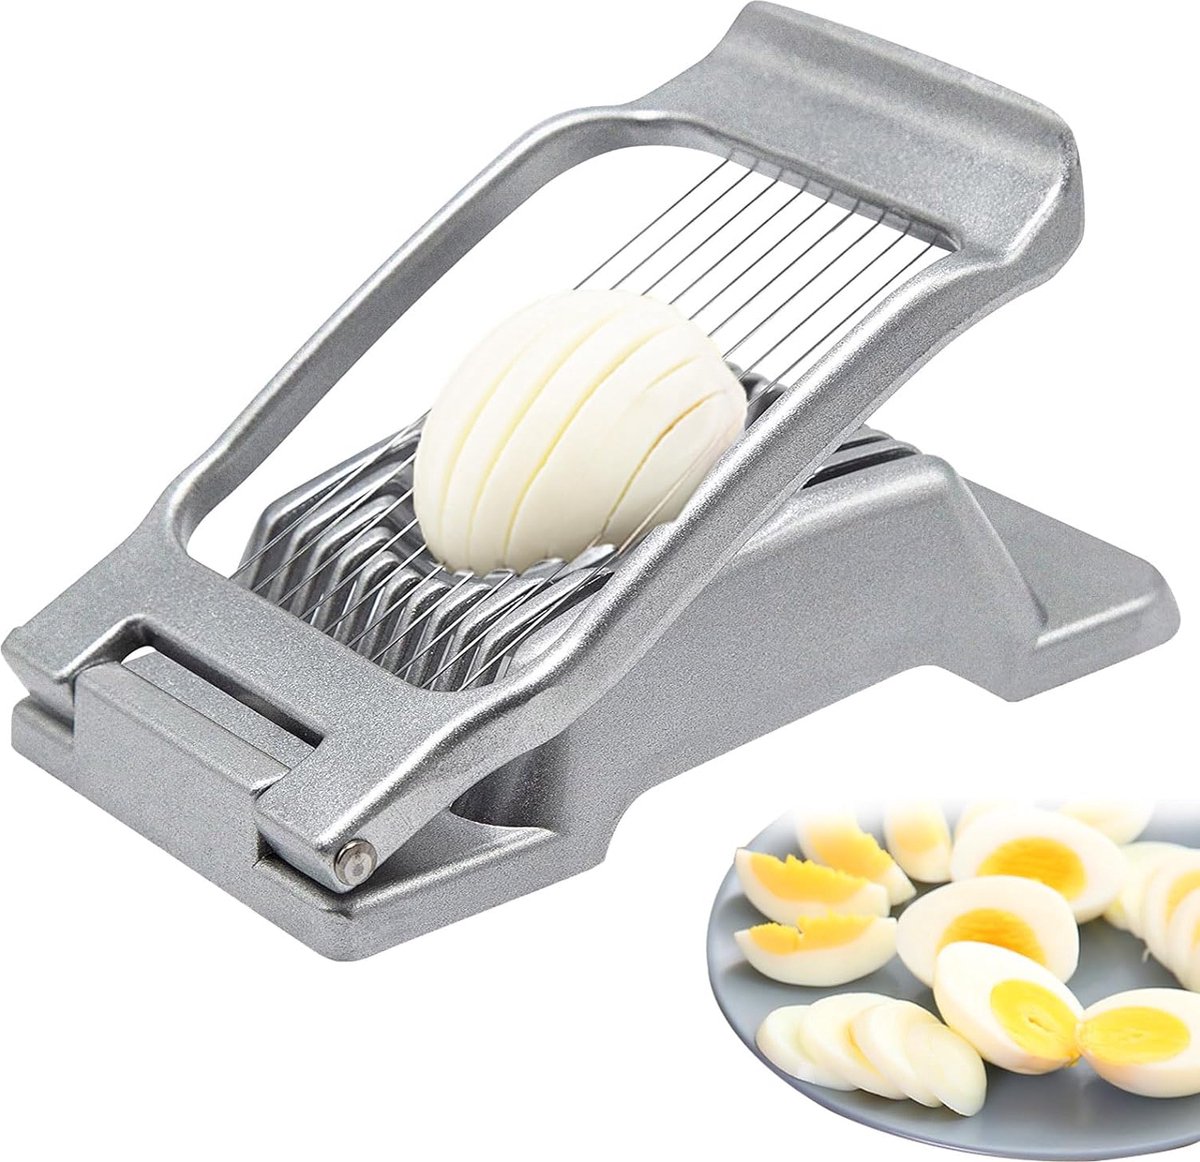 Eiersnijder - Duurzame Eiersnijder - Ei Snijder - Egg Slicer - Multifunctioneel - Premium - Merkloos